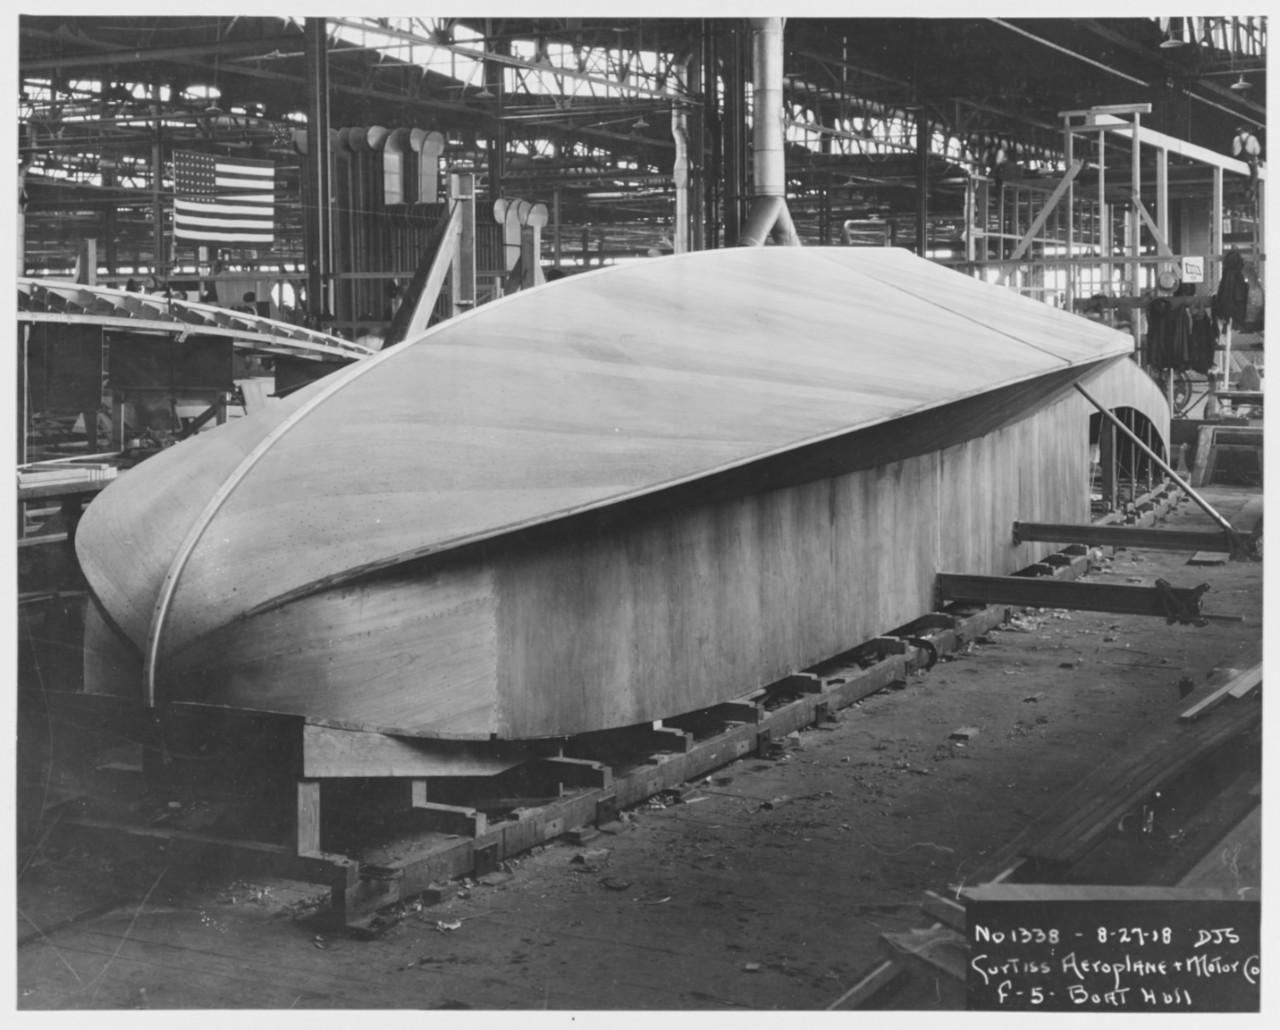 F-5-L Boat hull